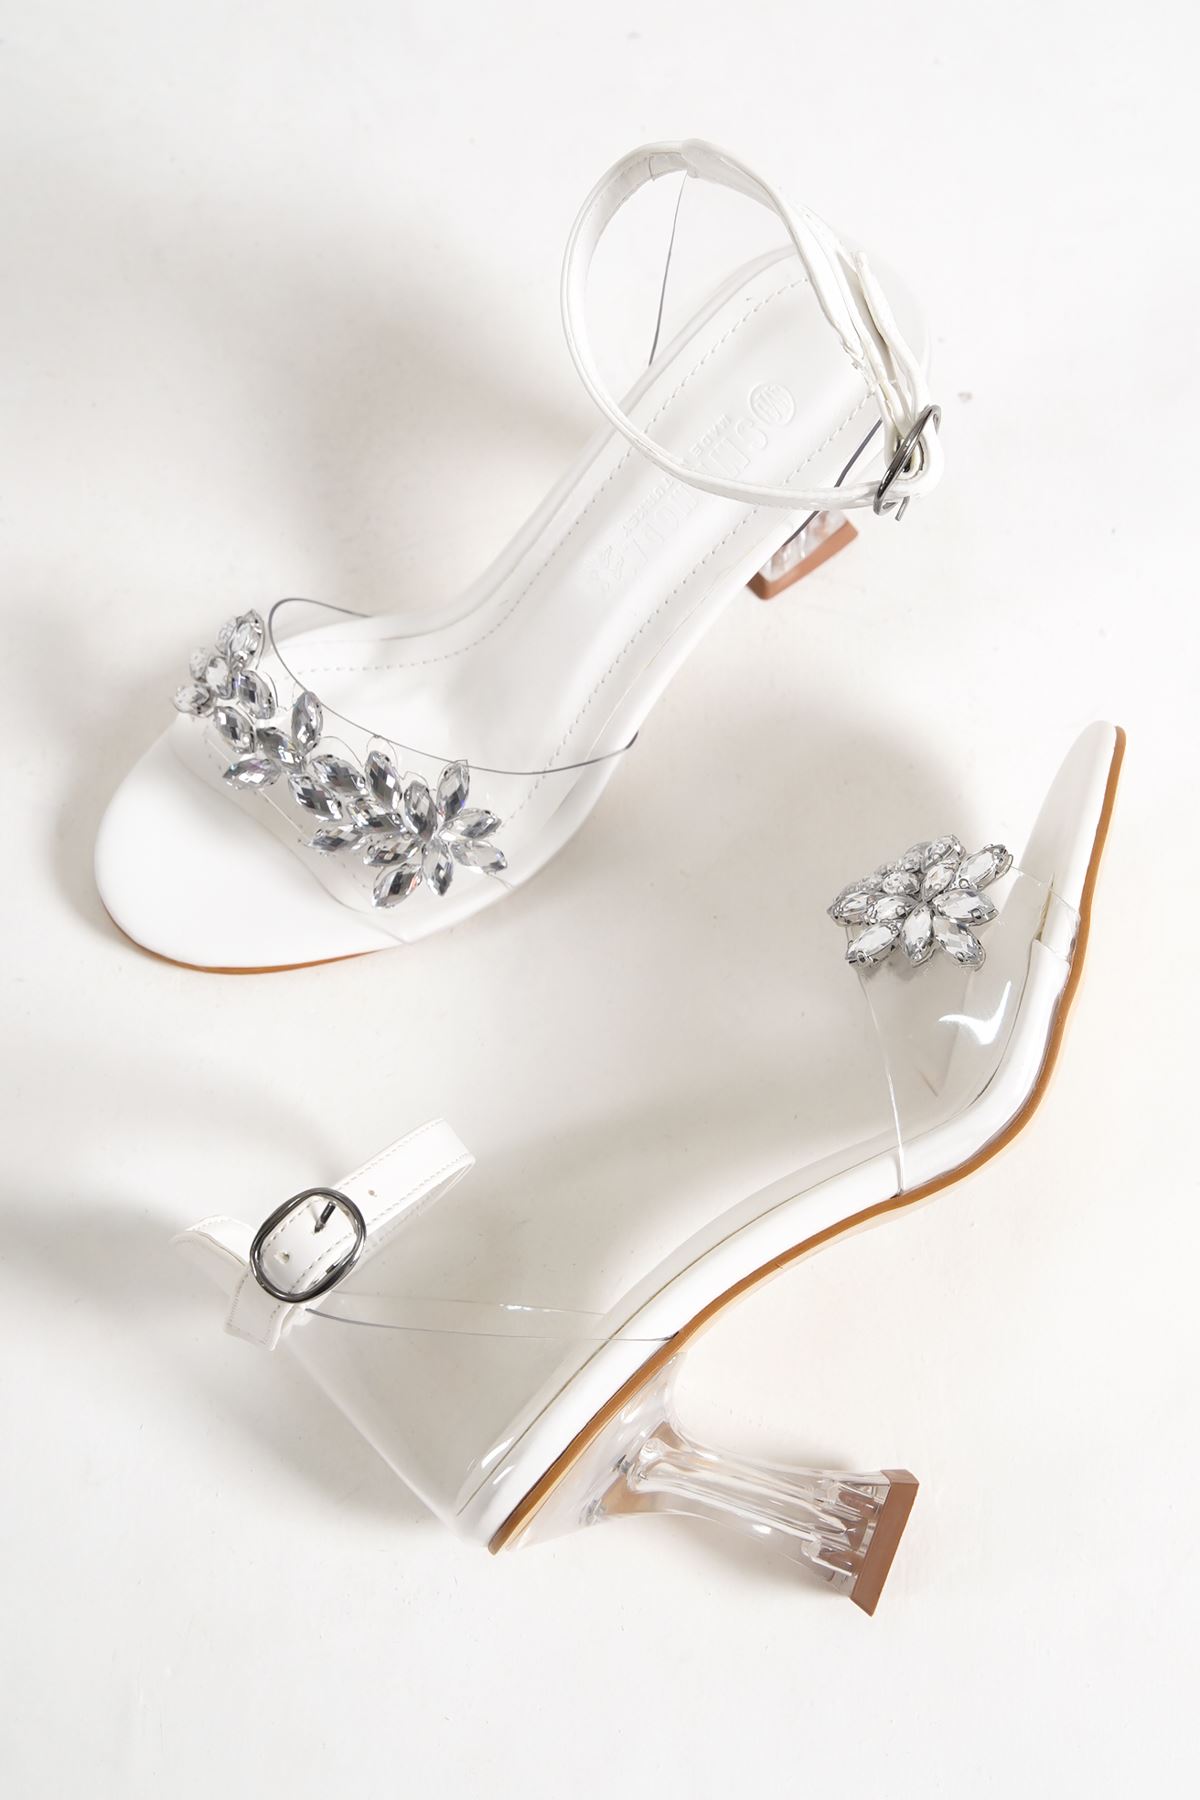 Jule Beyaz Taşlı Şeffaf Topuklu Kadın Ayakkabı